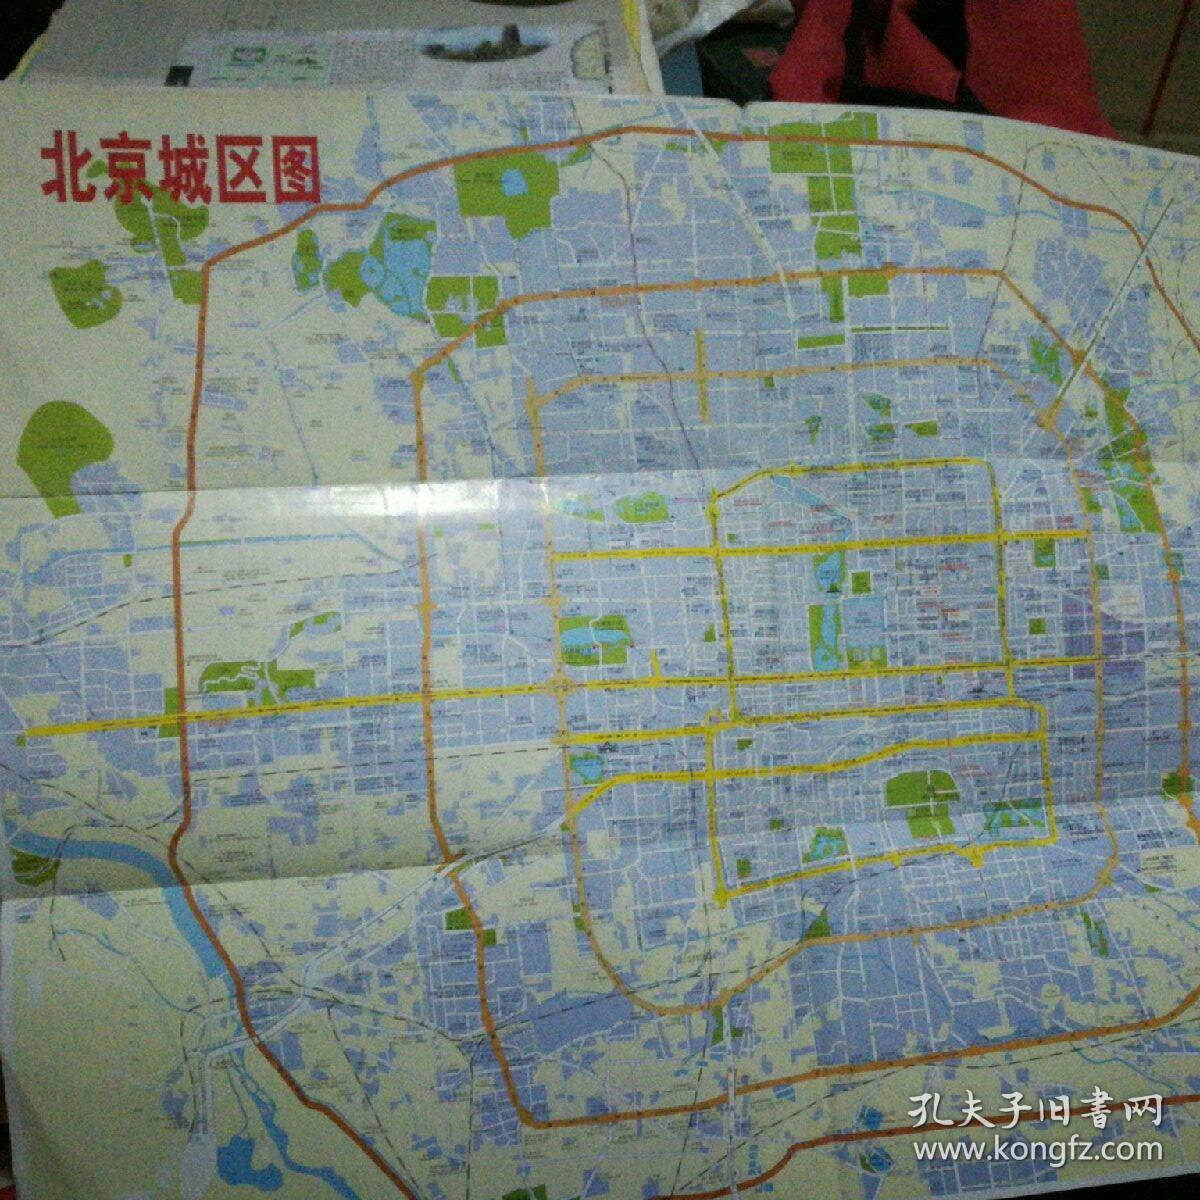 北京交通旅游图/北京城区图